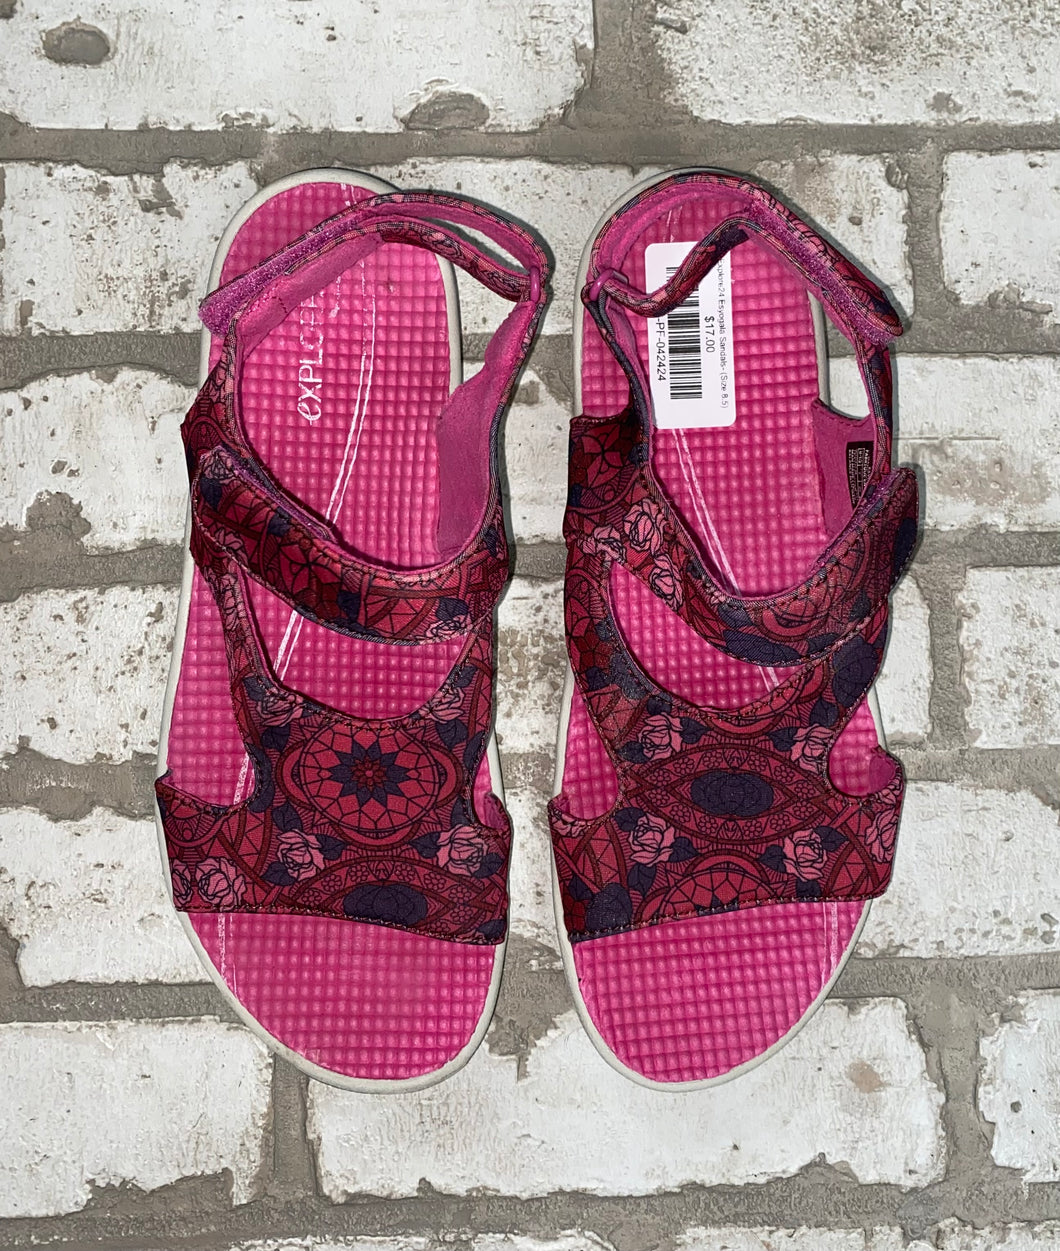 Explore24 Esyogala Sandals- (Size 8.5)